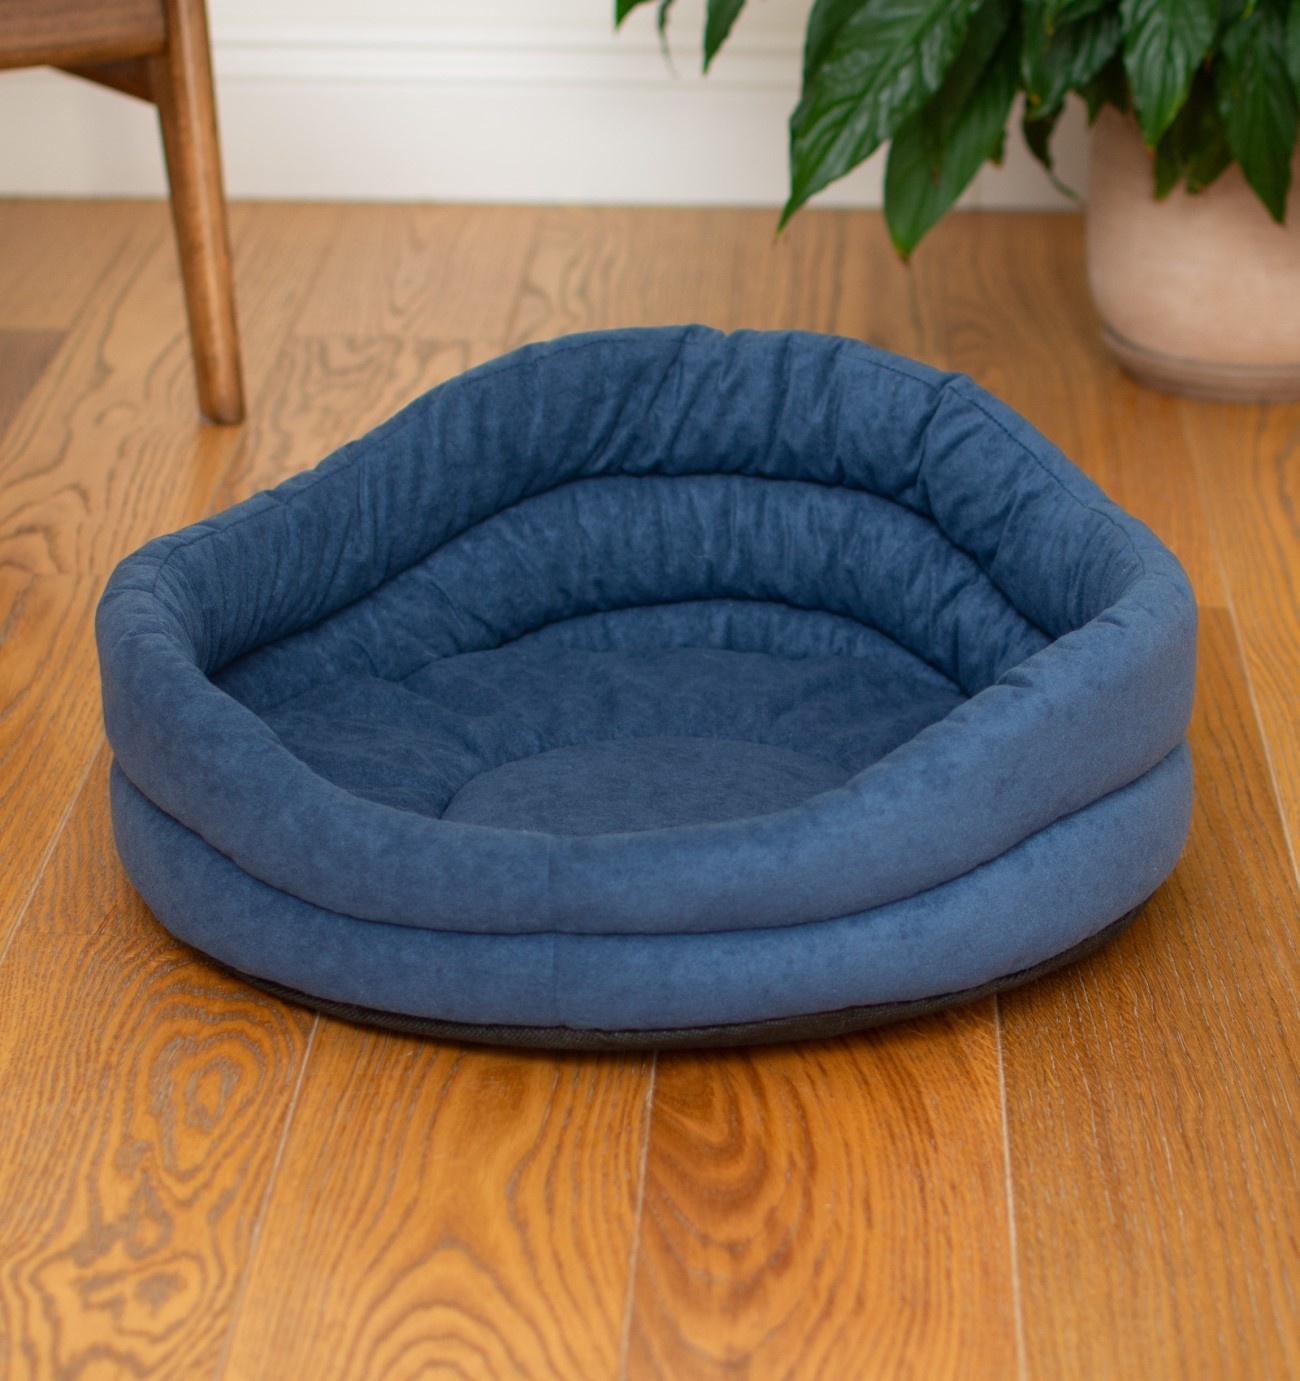 PETSHOP лежаки PETSHOP лежаки лежак круглый с подушкой, стёганый синий (37х37х18 см)